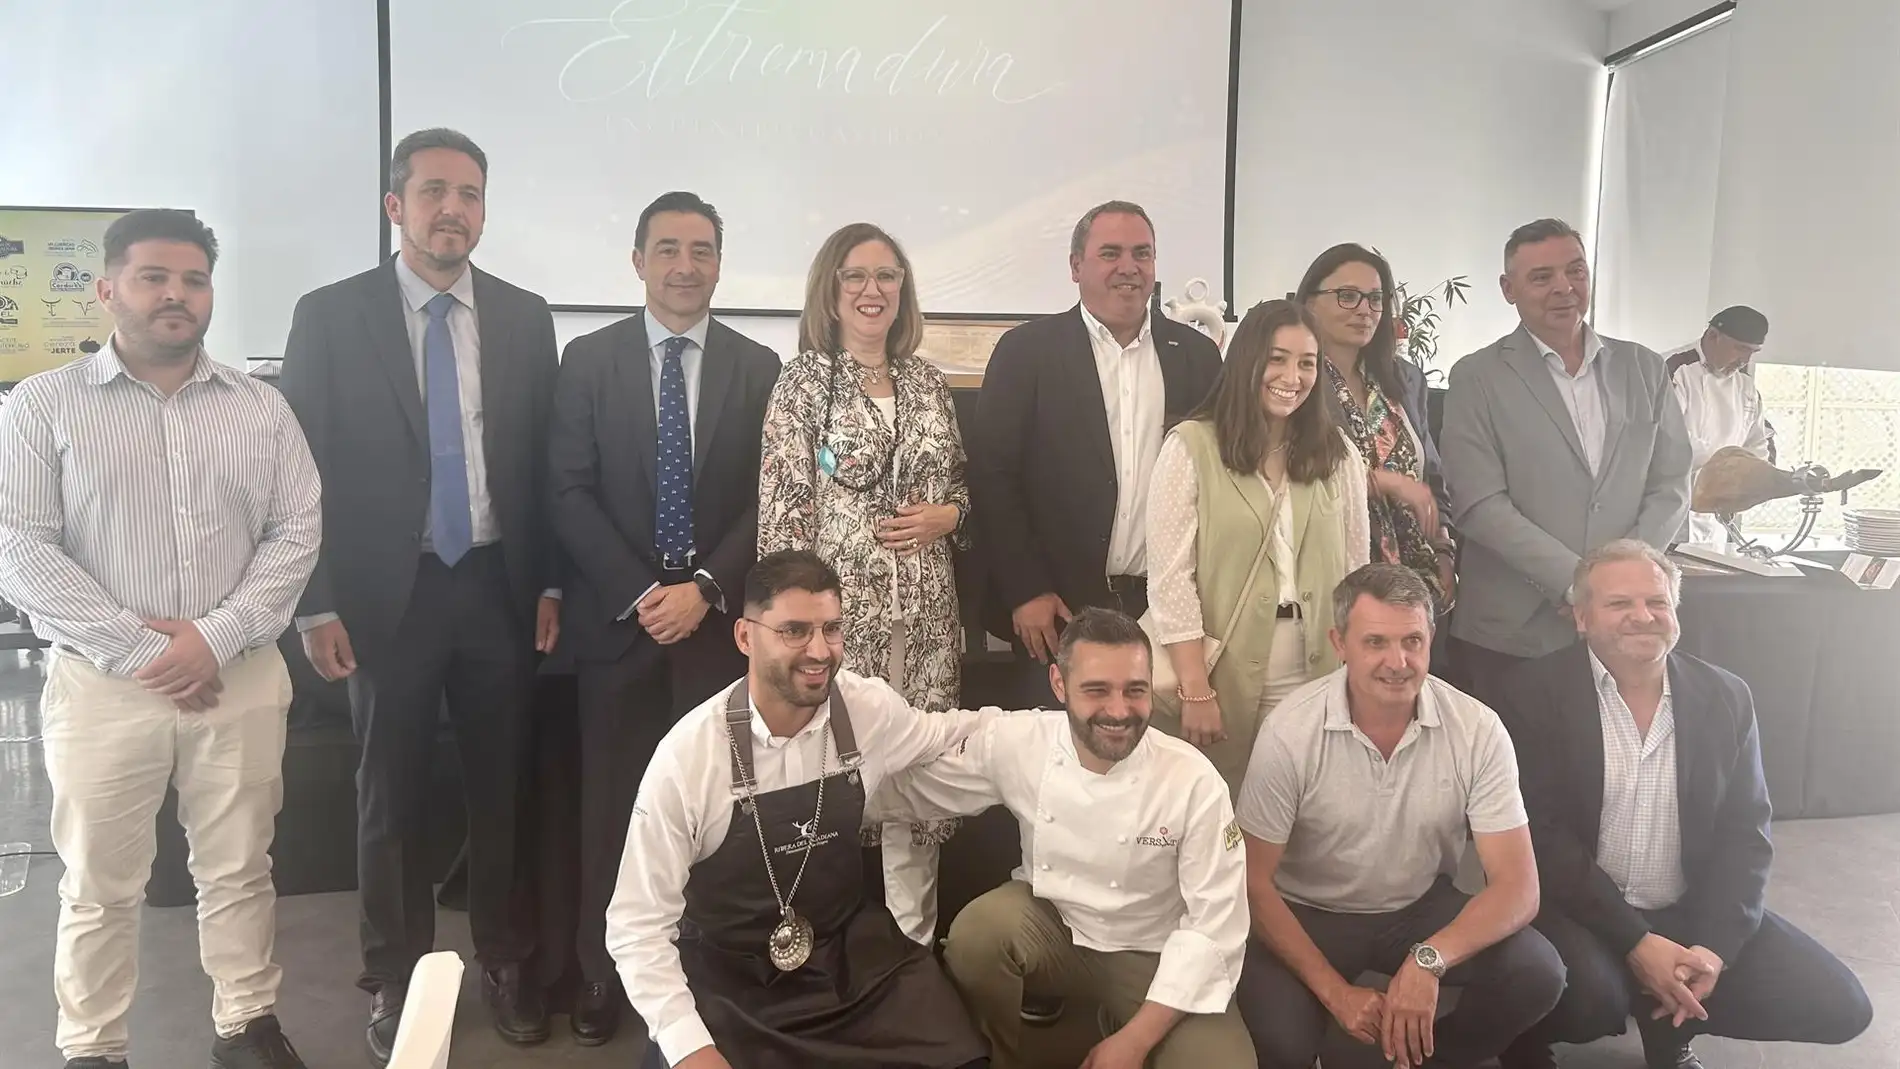 Mercedes Morán remarca la calidad gastronómica de Extremadura en un evento en Sevilla de promoción de las DOP e IGP